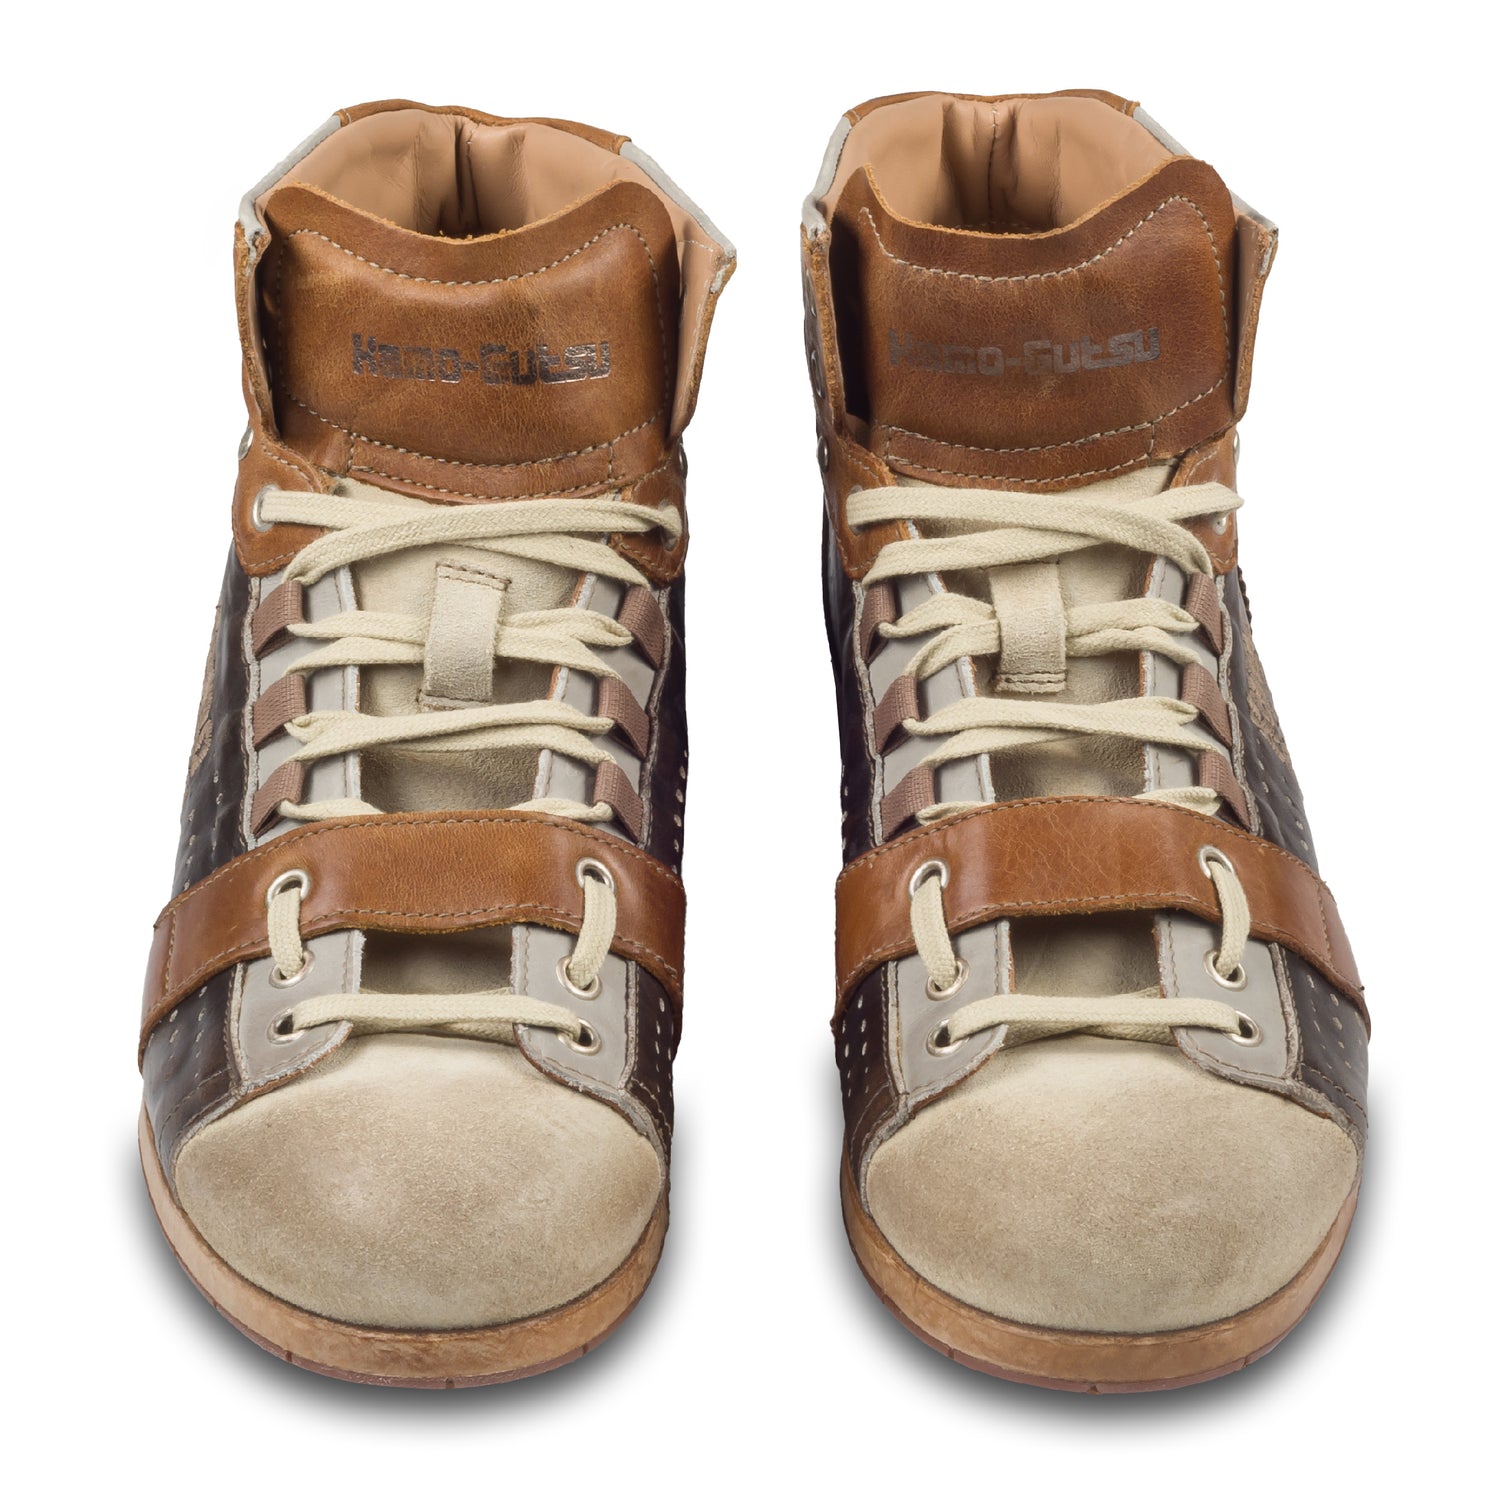 KAMO-GUTSU Herren Leder Sneaker Stiefel, braun/beige, Retro-Optik, High-Top, Modell TIFO-105 panna + pietra, Handgefertigt in Italien. Paarweise Ansicht von vorne.  